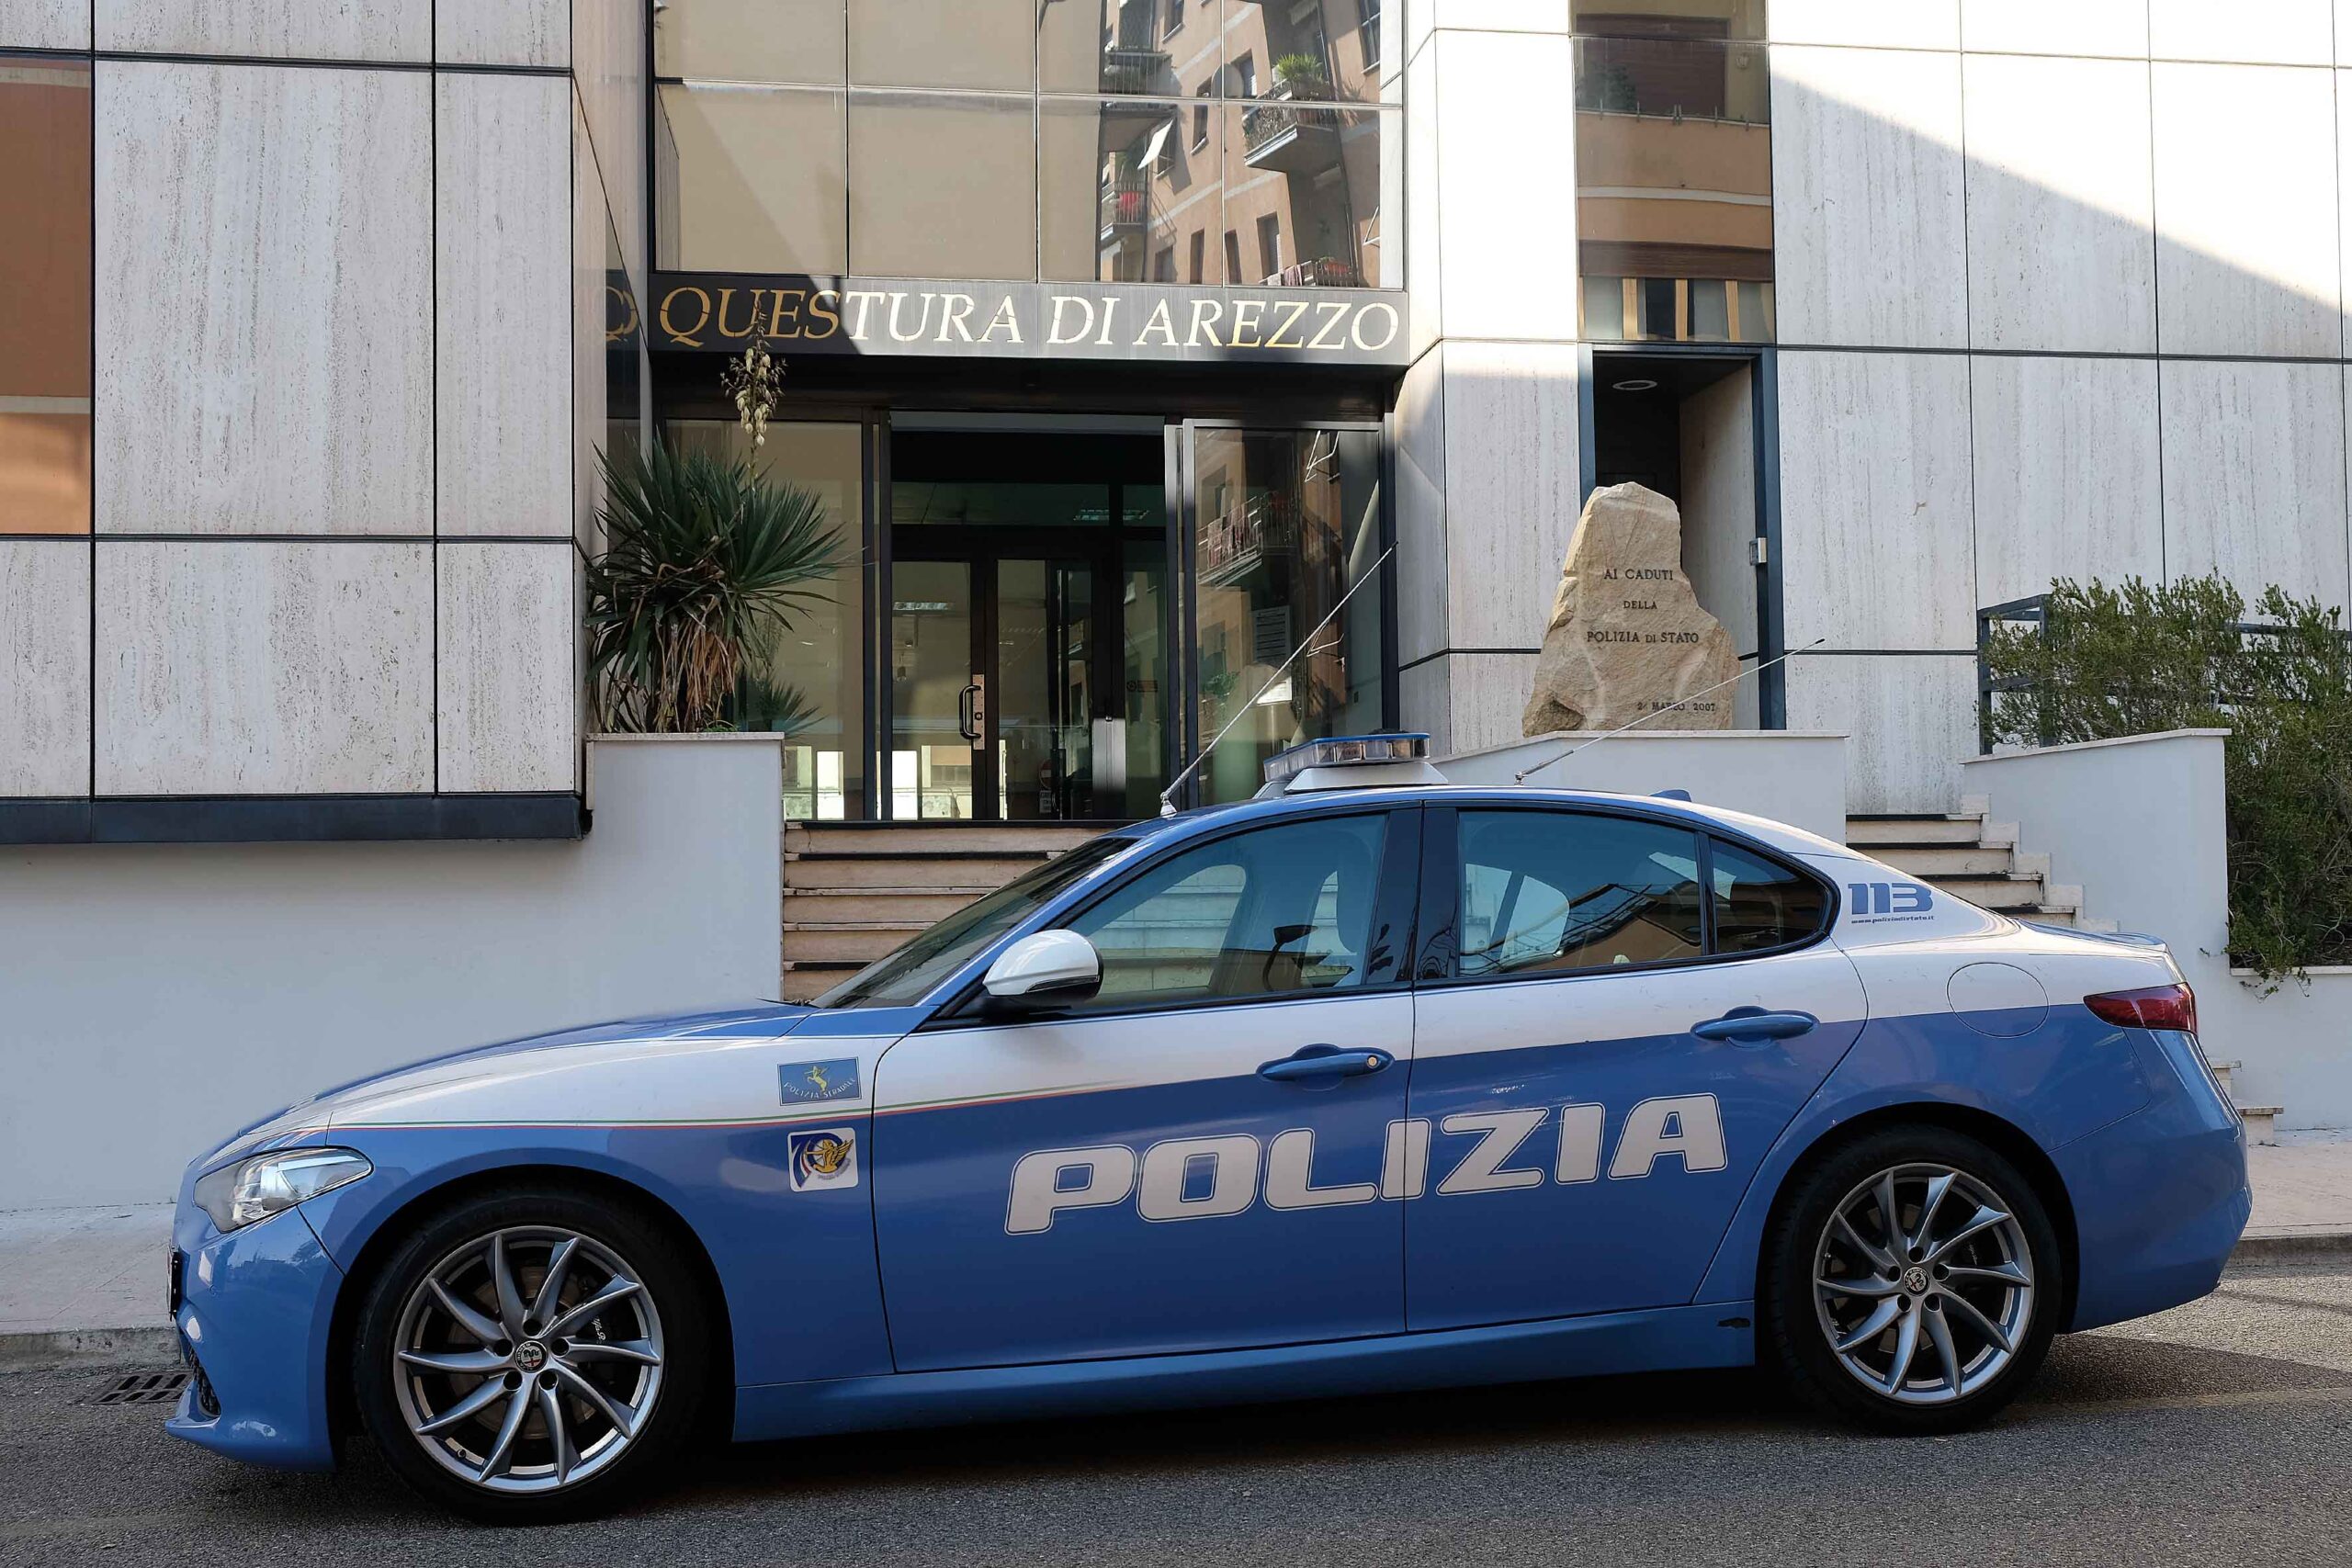 32 provvedimenti emessi negli ultimi due mesi dal Questore di Arezzo nei confronti di altrettanti soggetti ritenuti pericolosi per la sicurezza pubblica